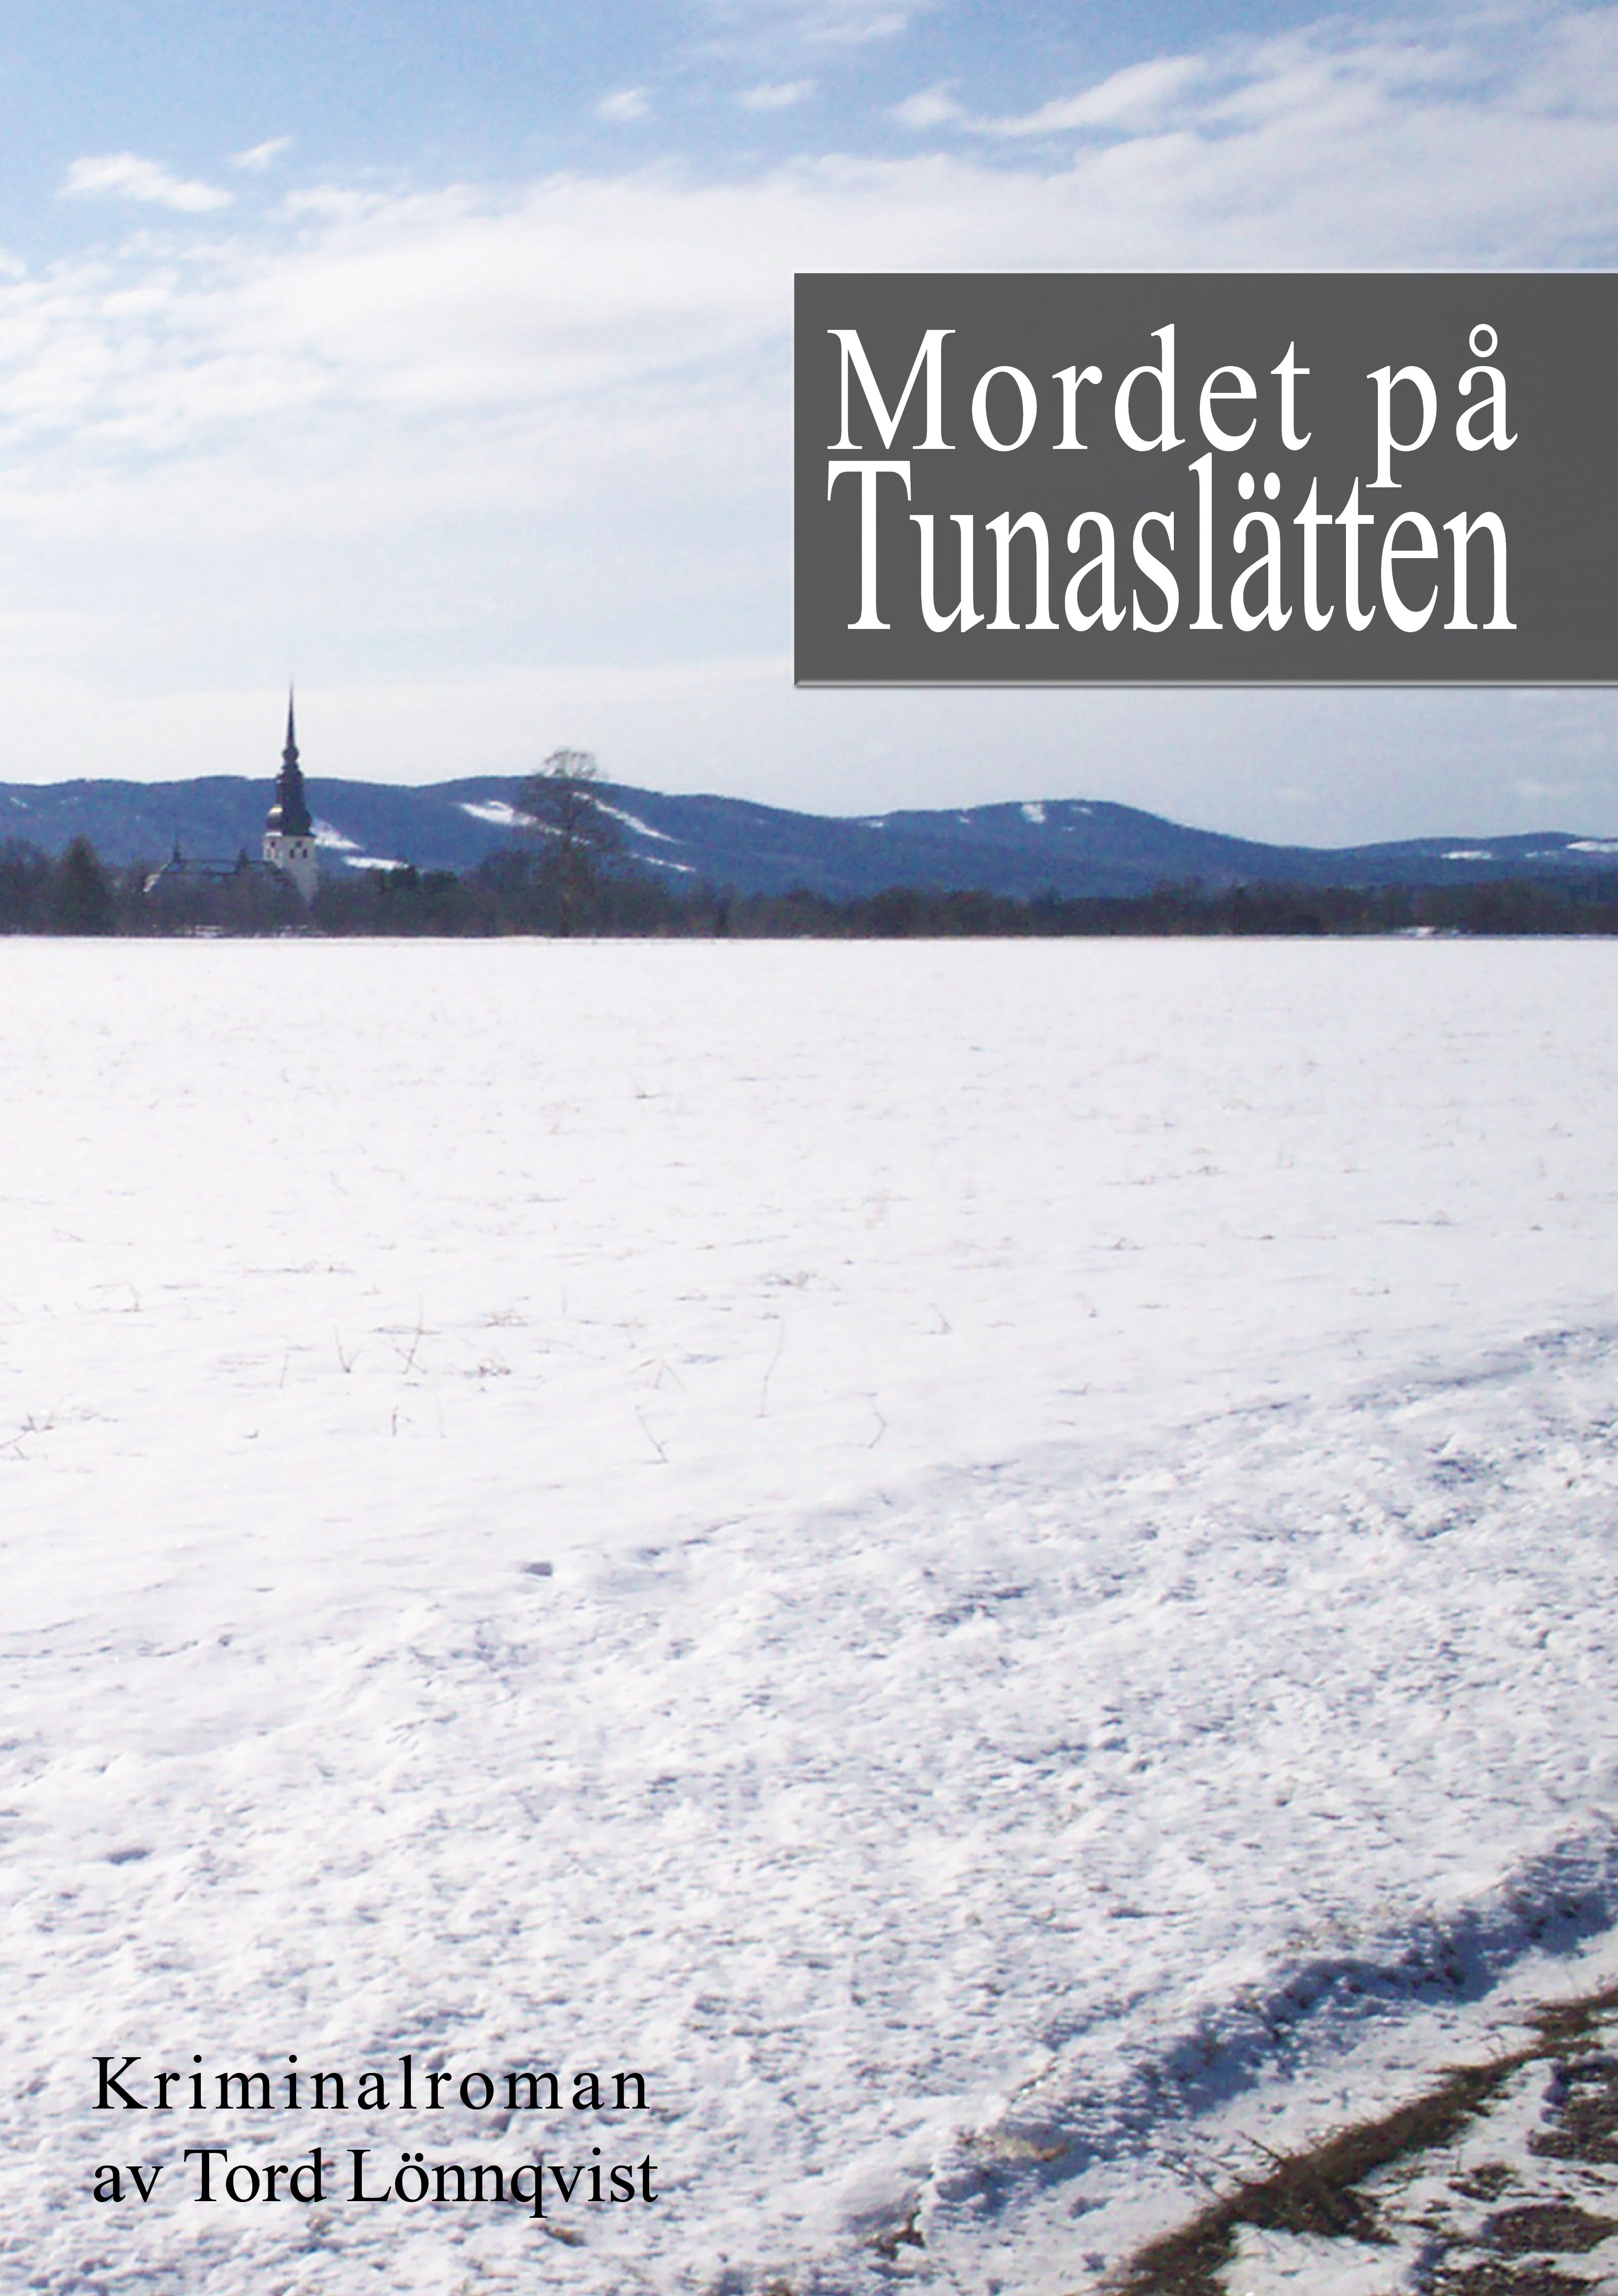 Mordet på Tunaslätten, e-bok av Tord Lönnqvist